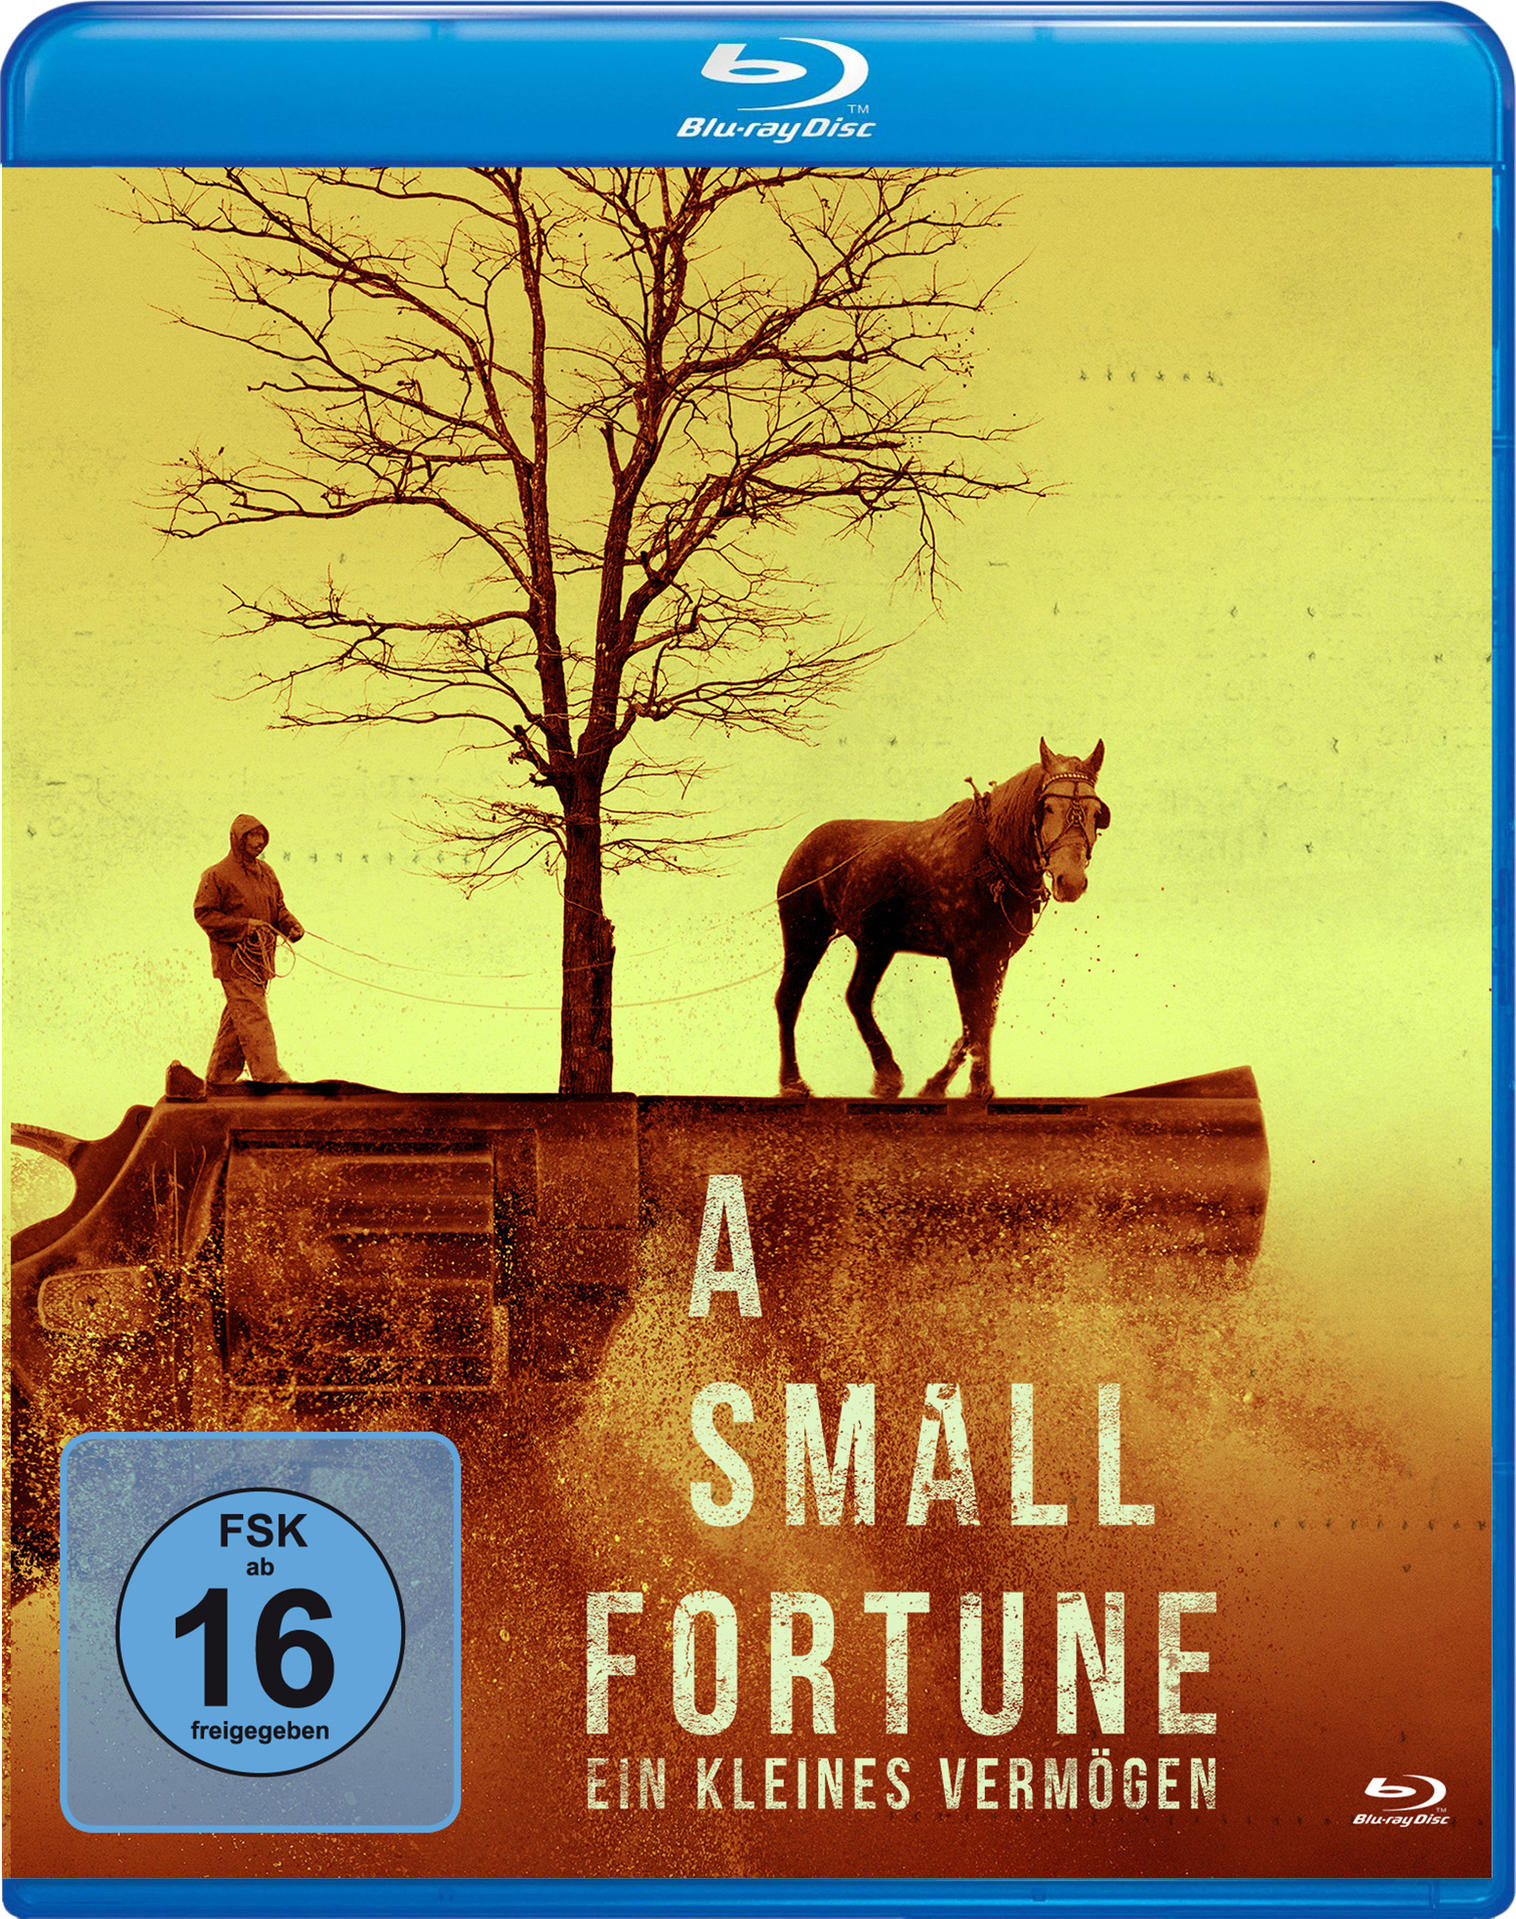 Kleines Small Vermögen Fortune-Ein A Blu-ray